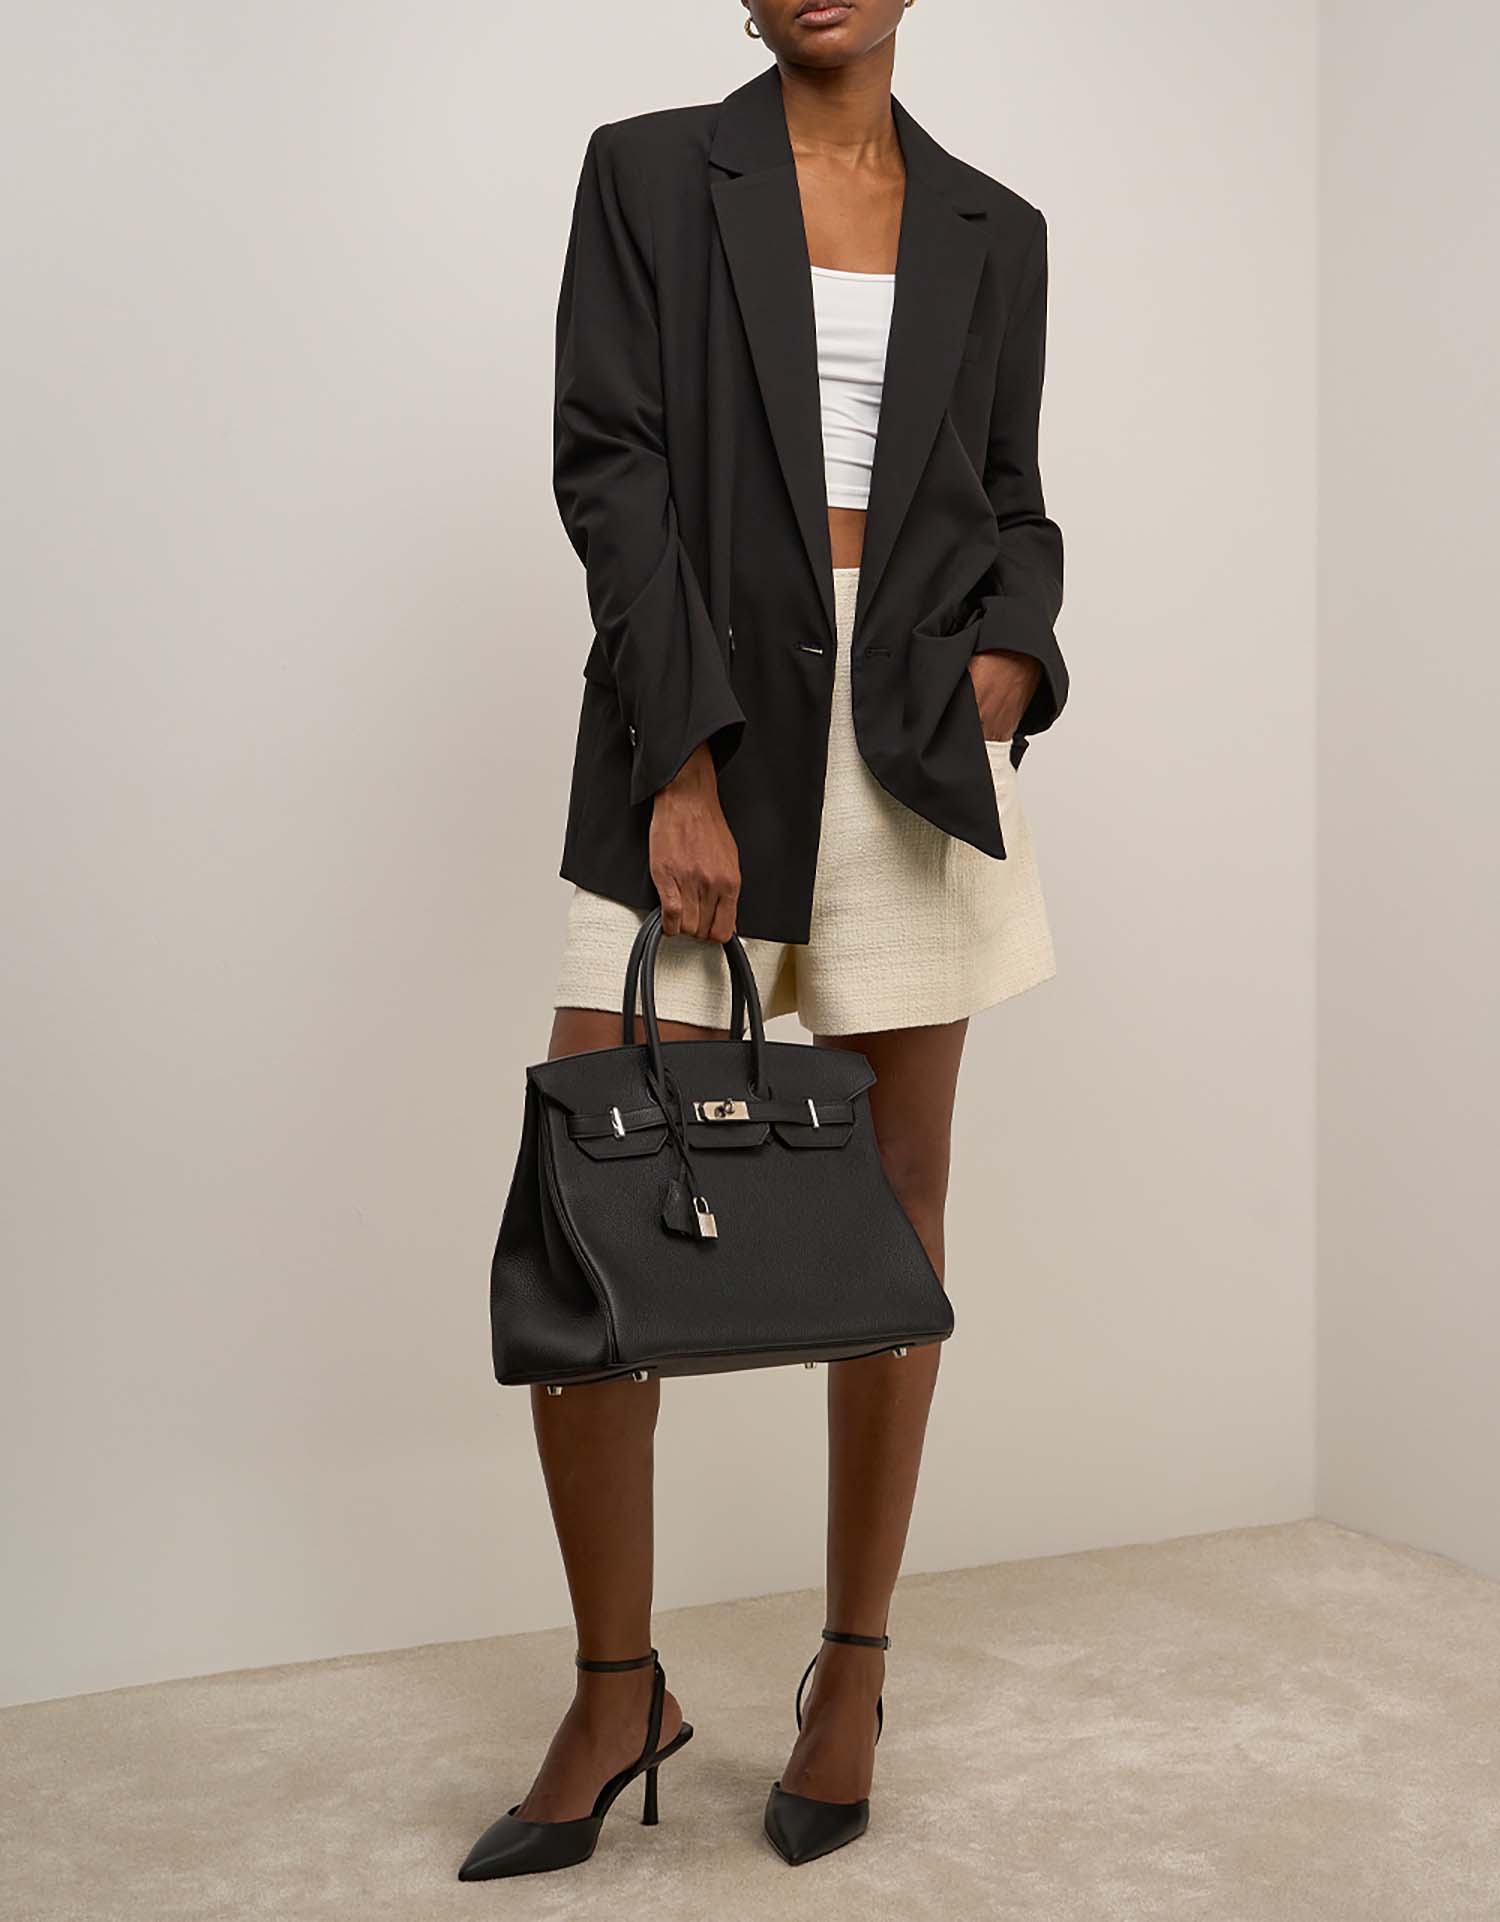 Hermès Birkin 35 Schwarz auf Model | Verkaufen Sie Ihre Designertasche auf Saclab.com